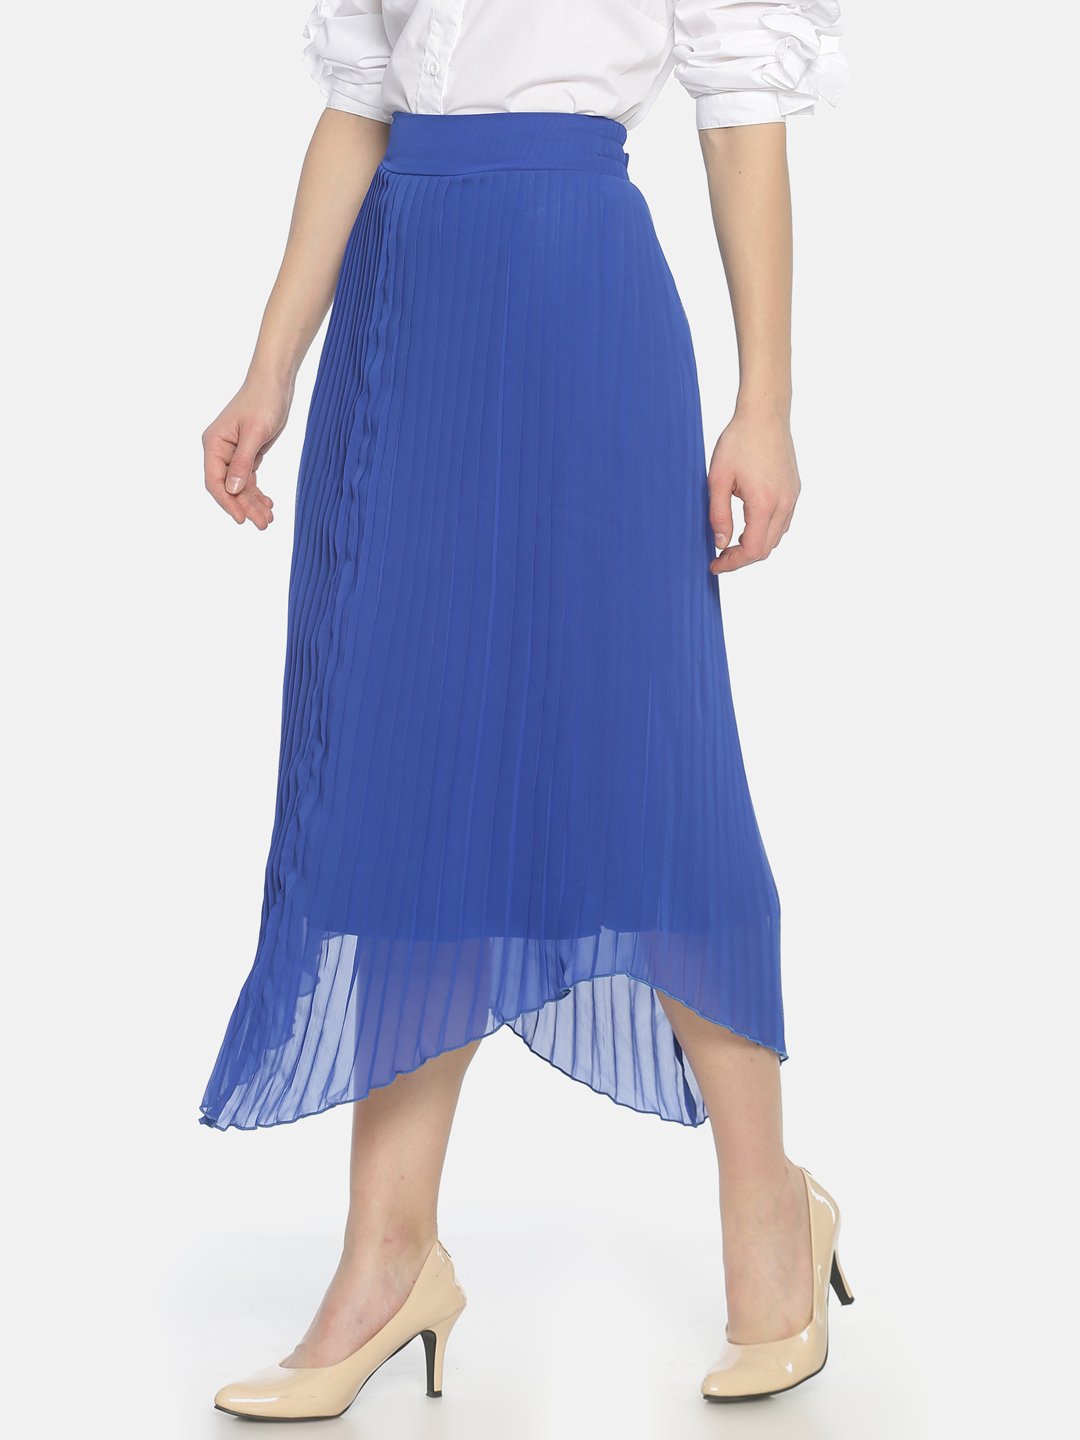 IS.U Royal Blue Pleated  Skirt